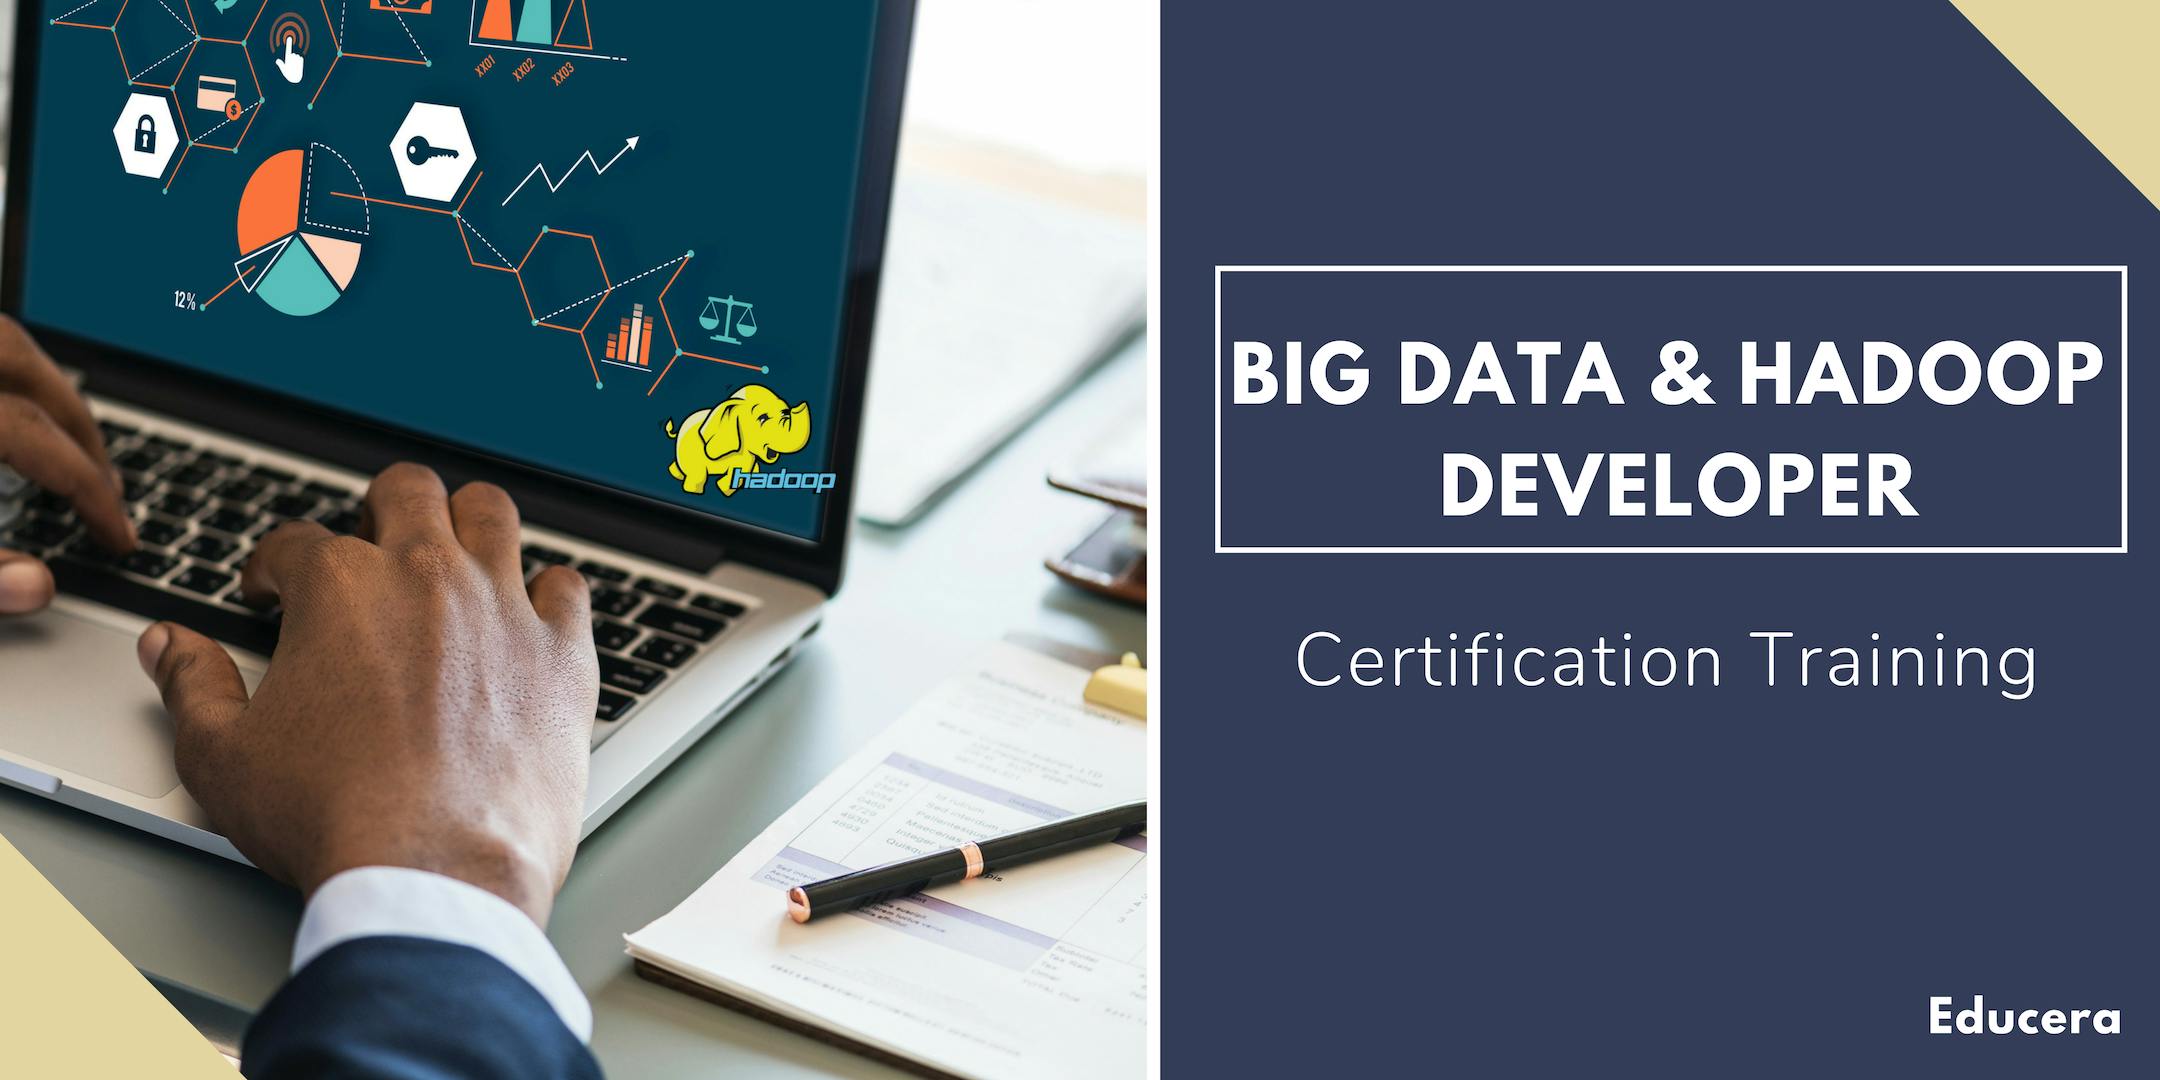 Big Data and Hadoop Developer Certification Training in McAllen, TX